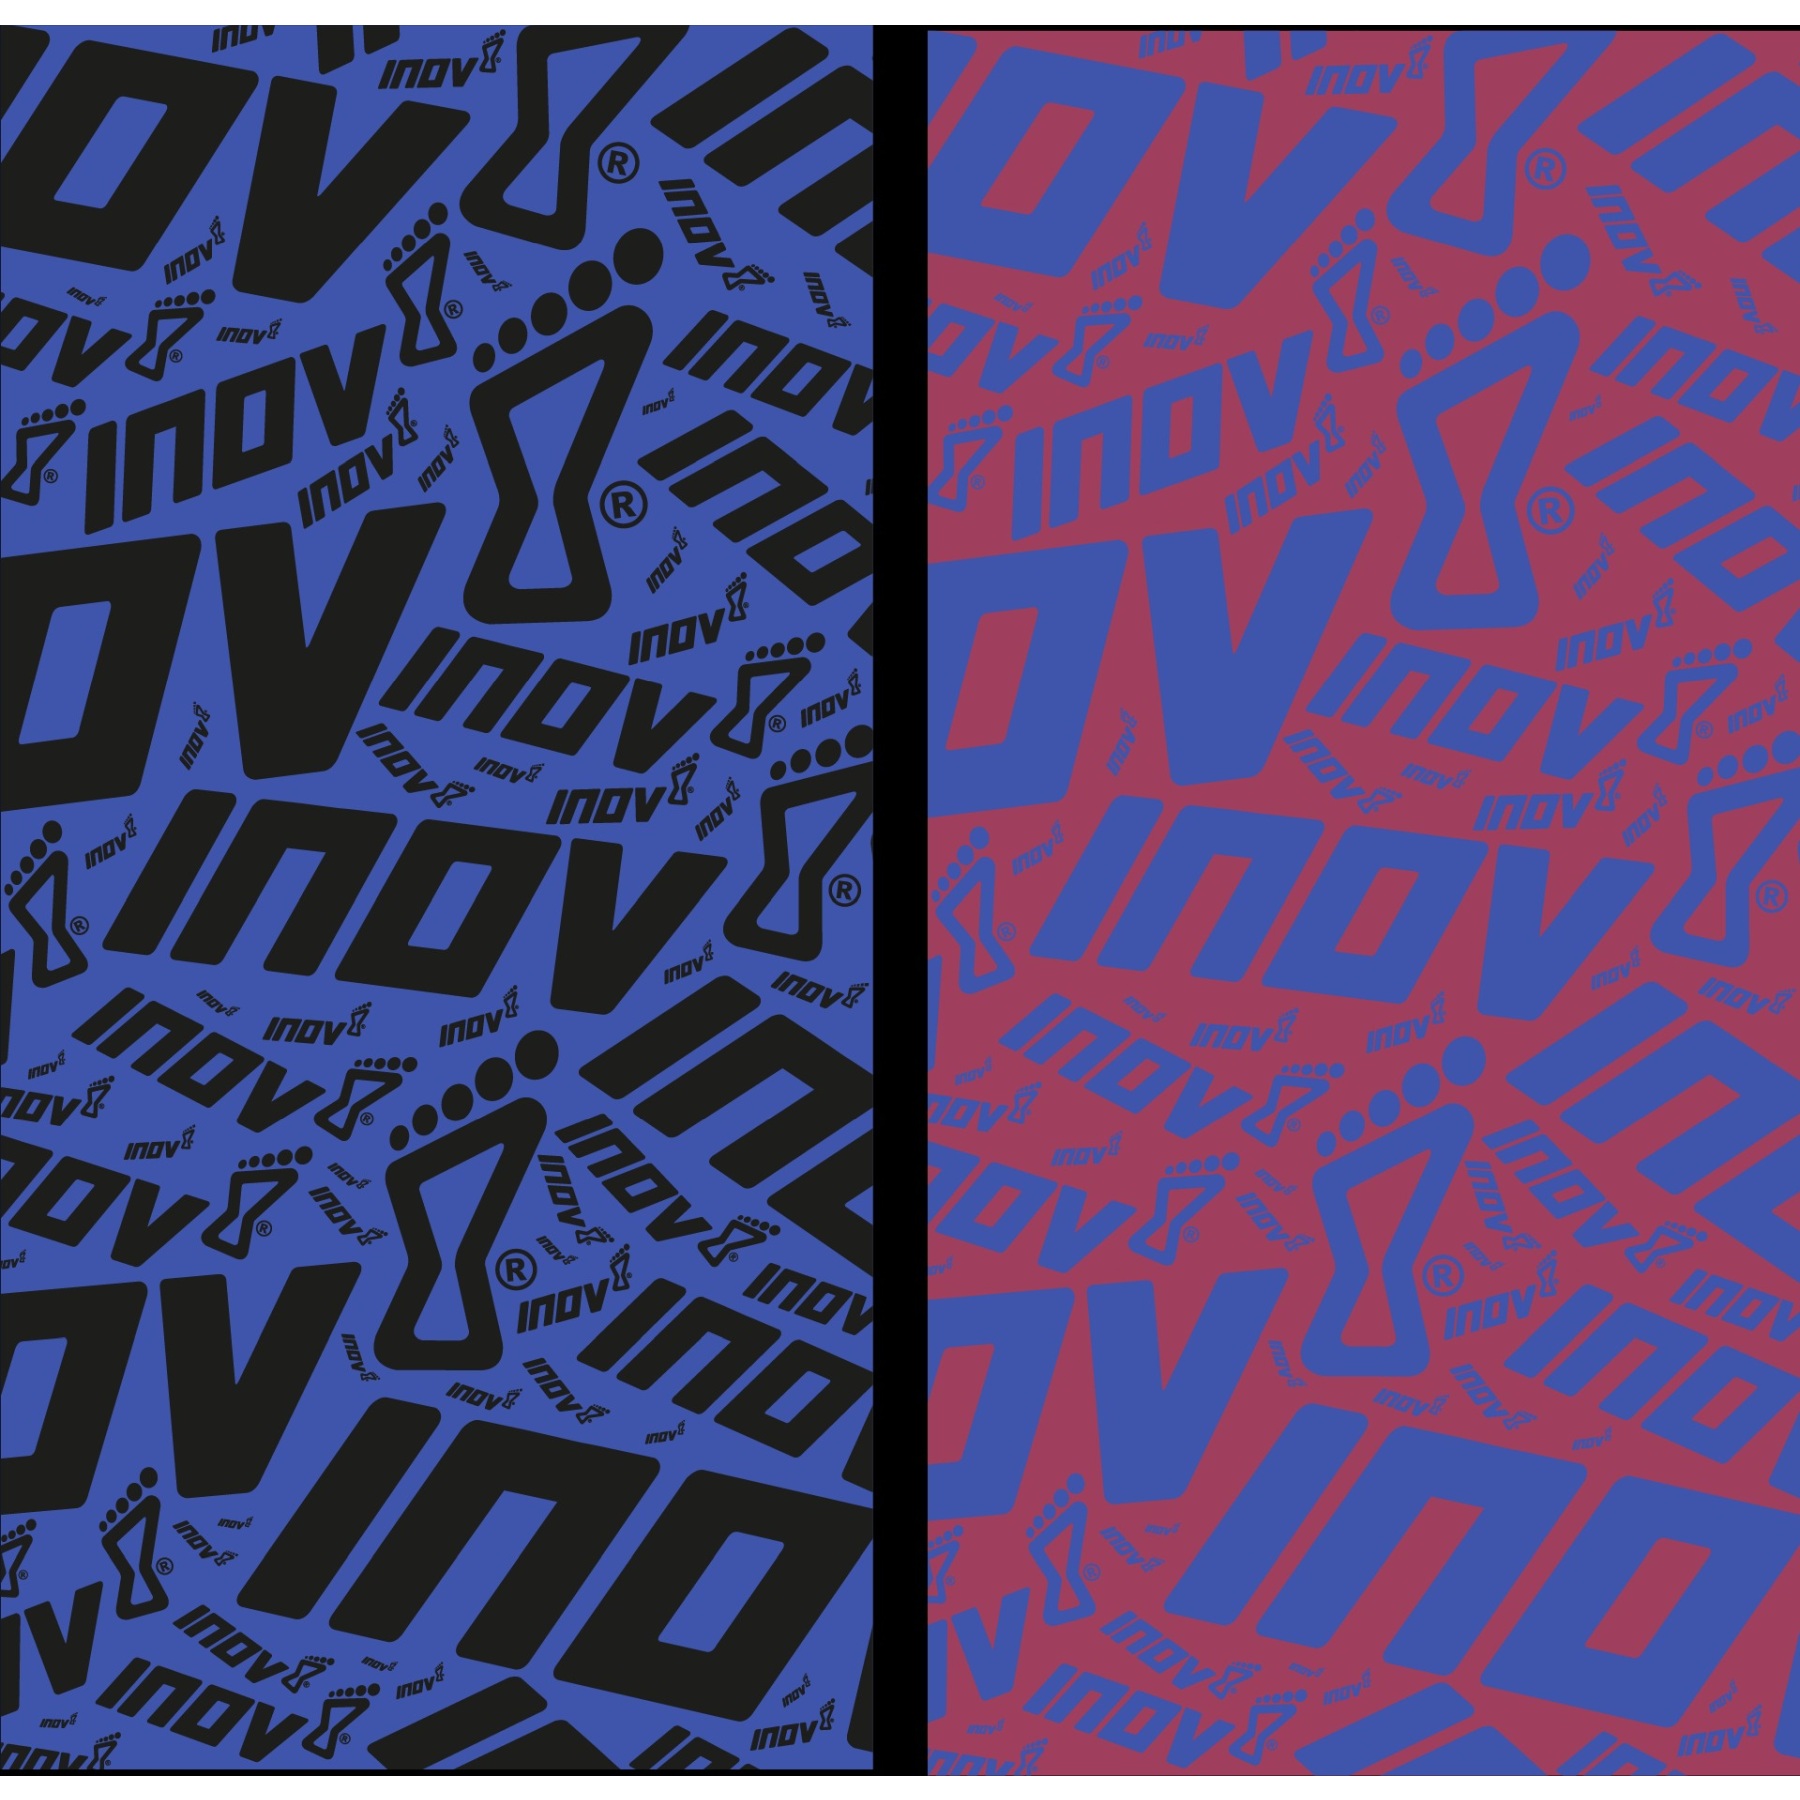 Produktbild von Inov-8 Wrag Multifunktionstuch (Doppelpack) - blau/schwarz pink/blau